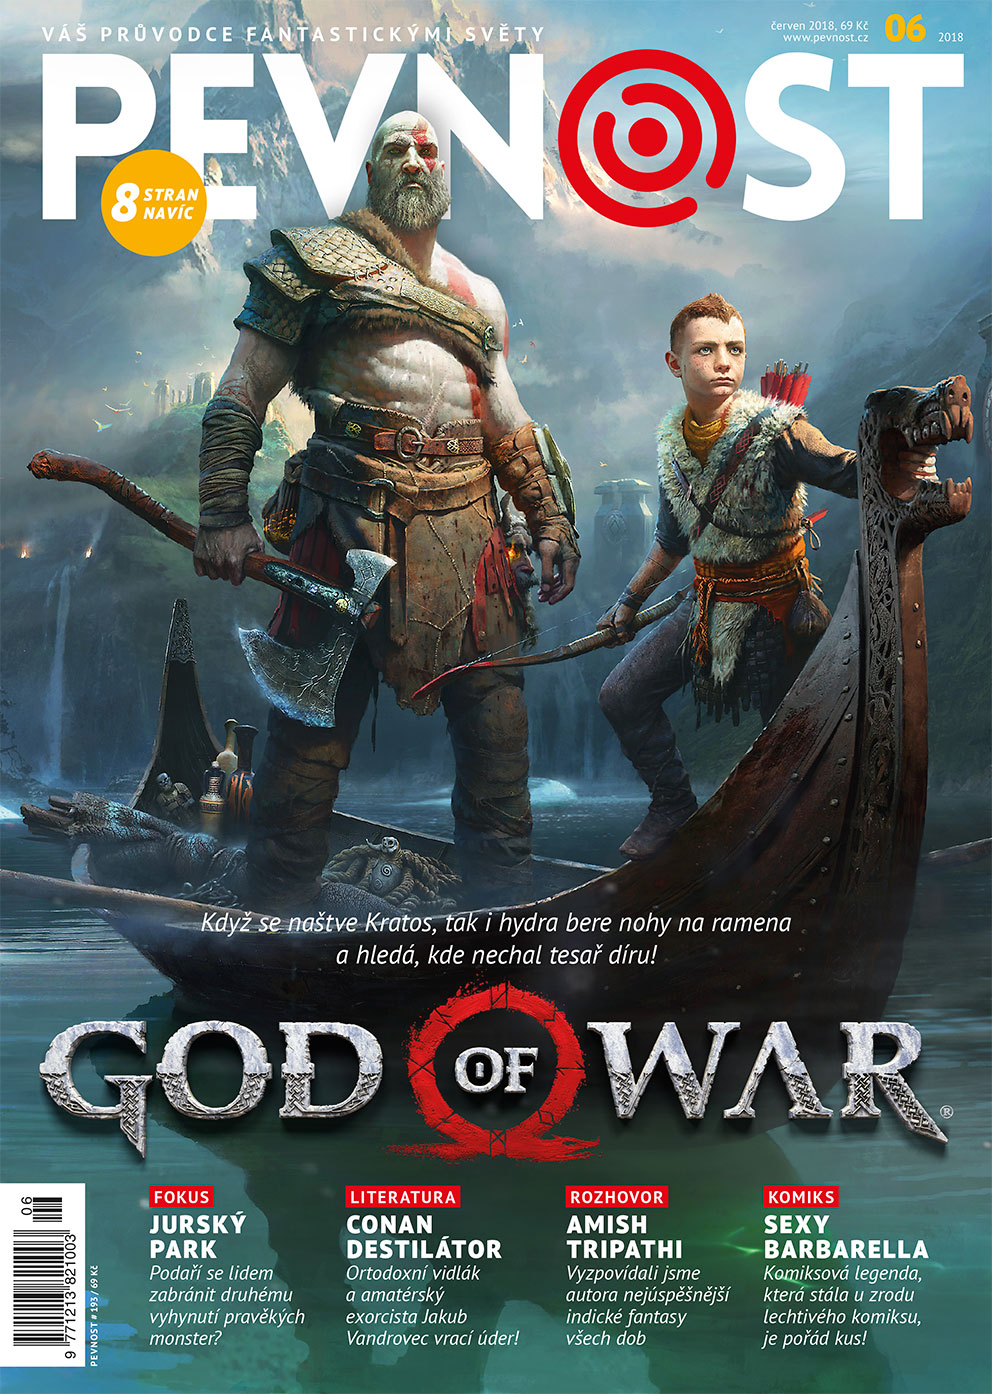 Nalaďte ty nejlepší válečné barvy a přestaňte se bát bohů! Nová Pevnost, Kratos a spousta beneluxusního čtiva jsou konečně tu!!!